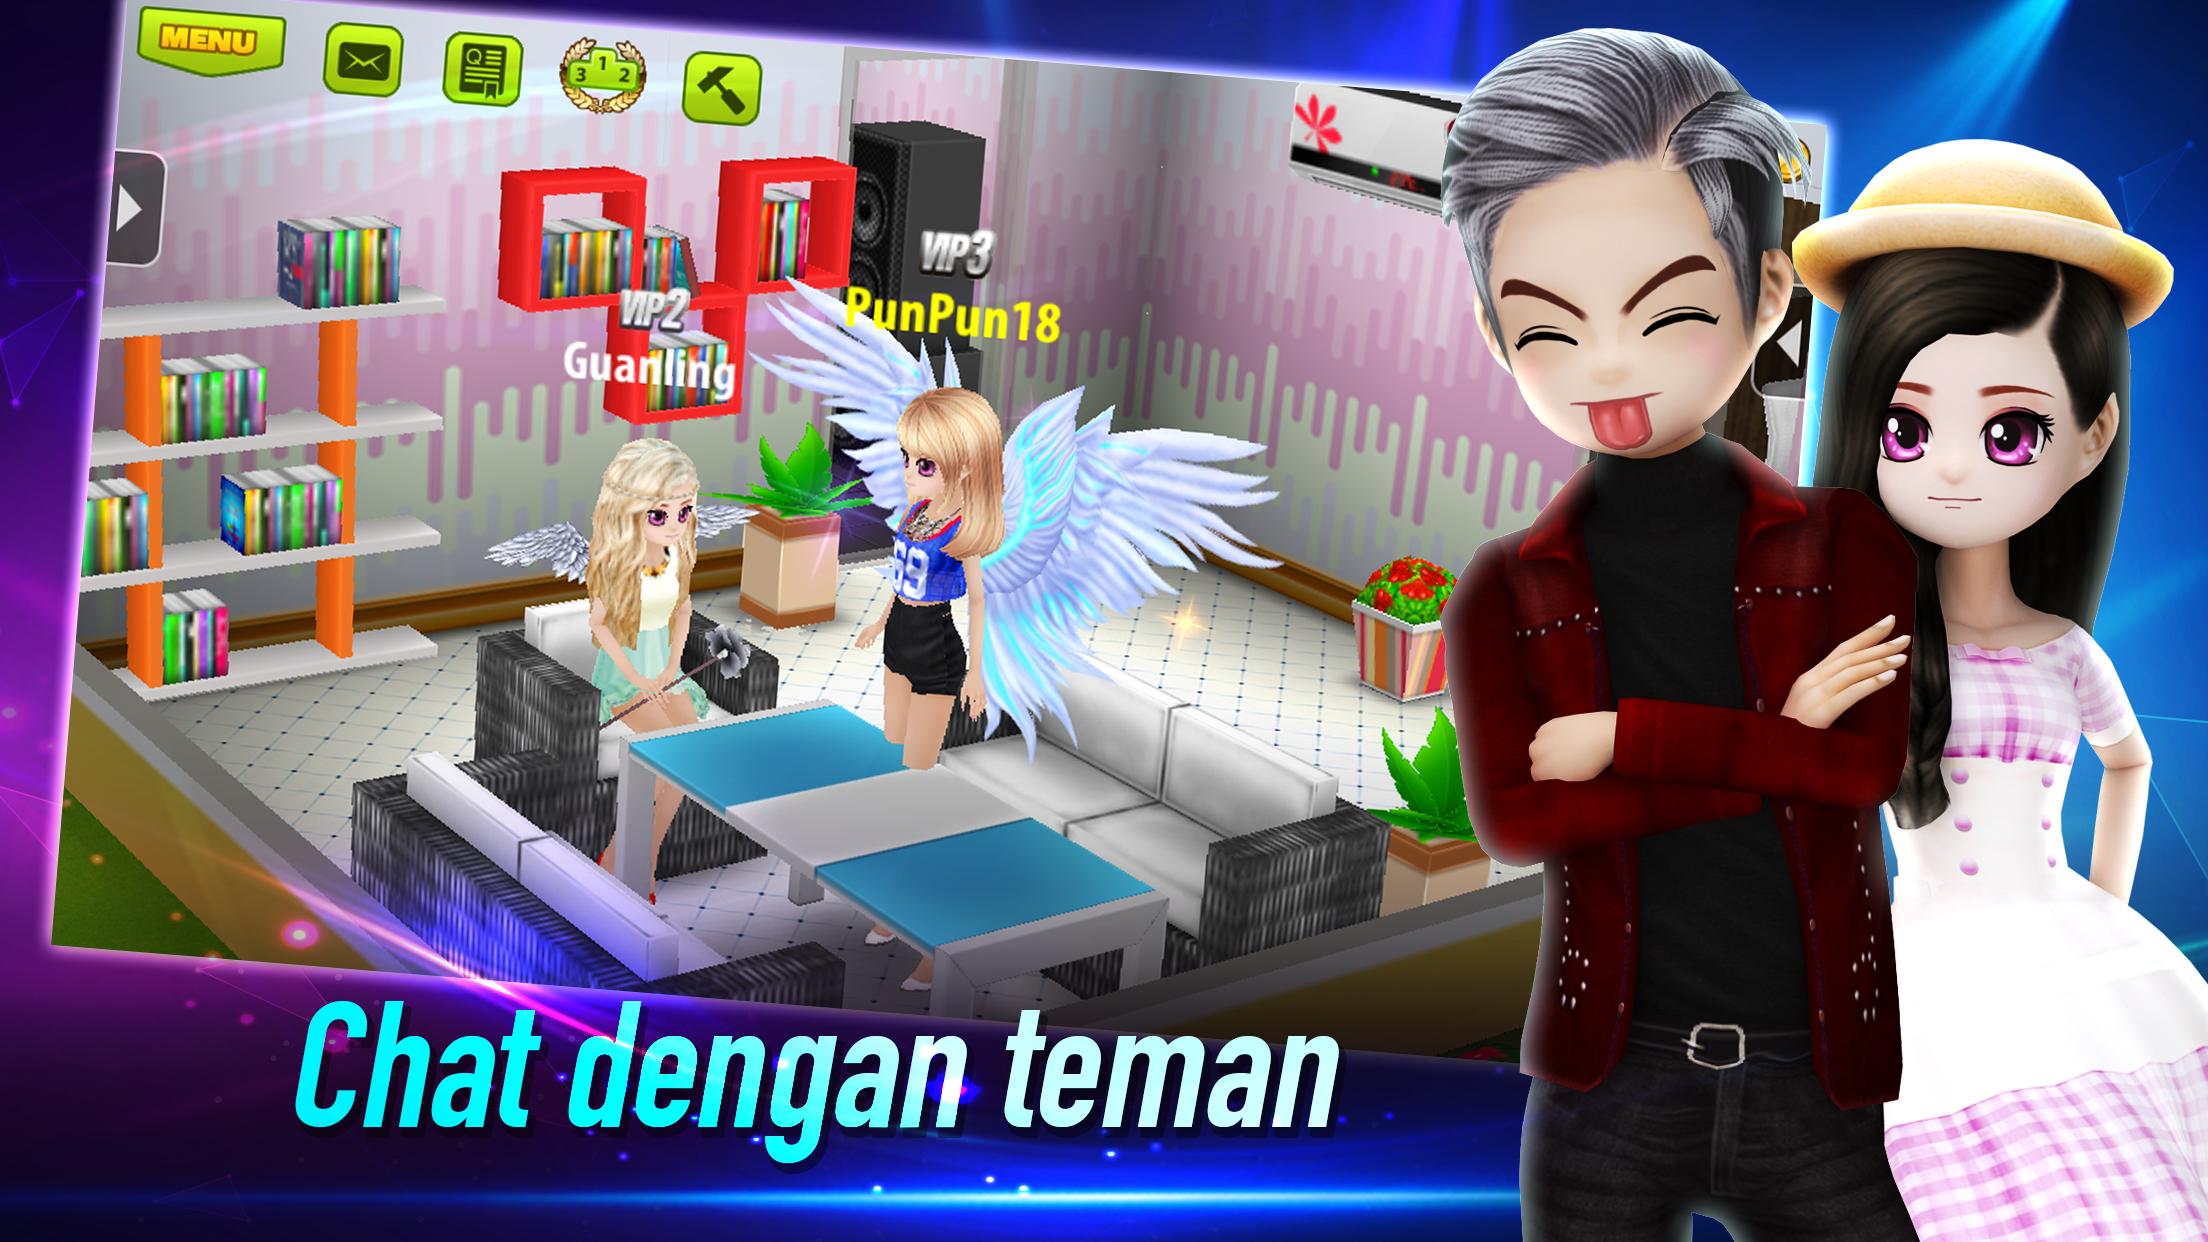 AVATAR MUSIK INDONESIA - Social Dancing Game 1.0.1 Screenshot 6